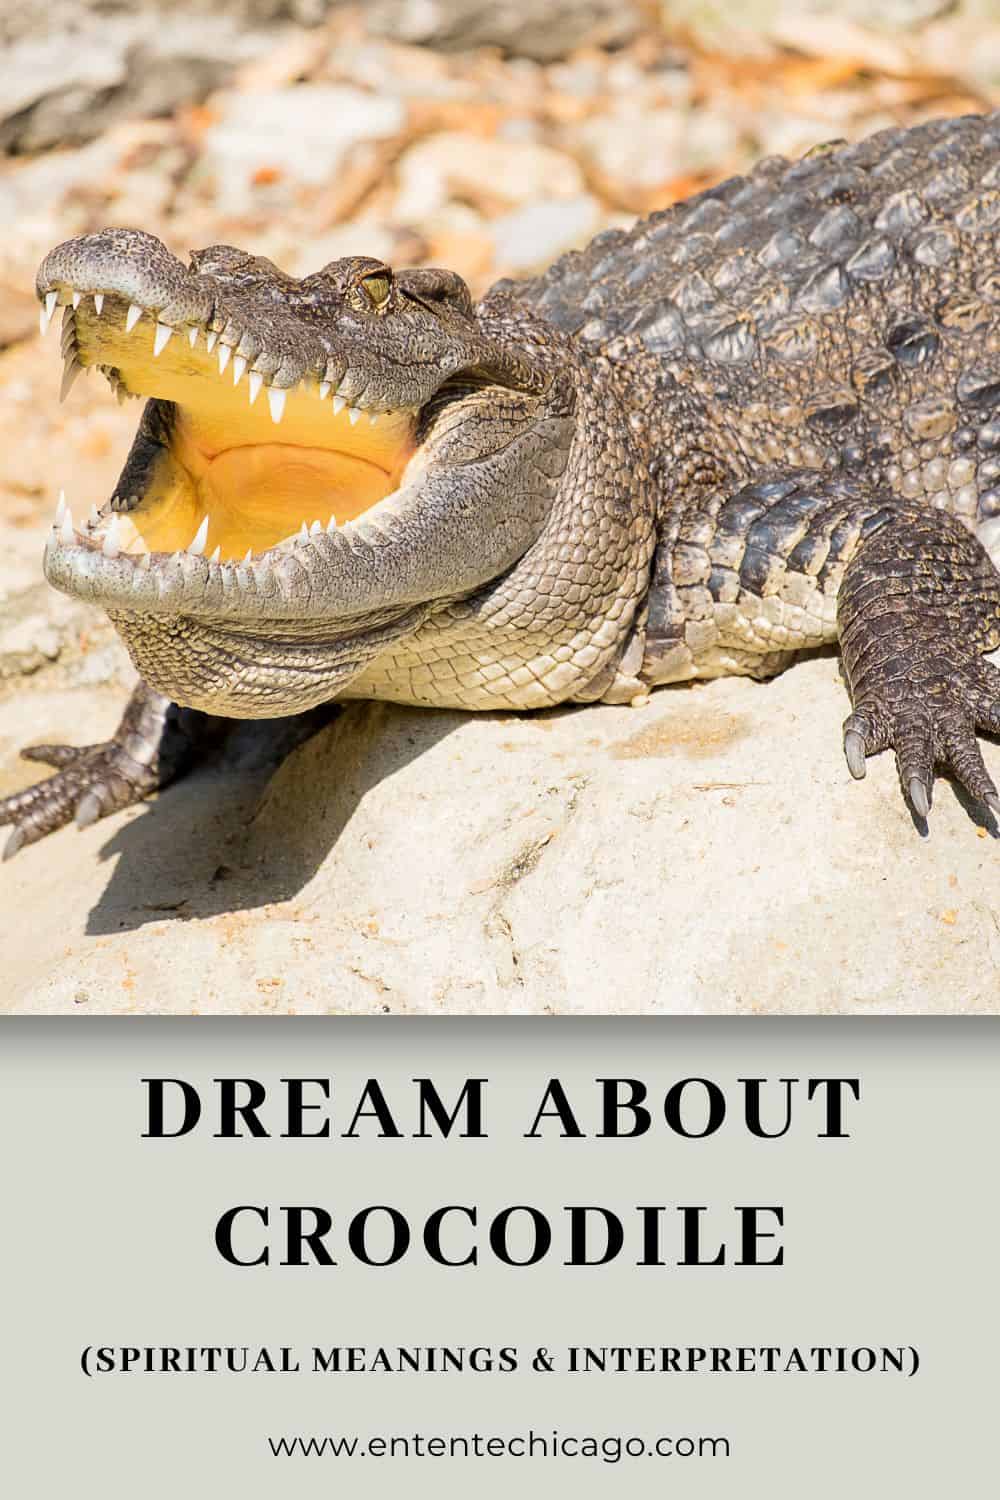 Crocodile Dreams